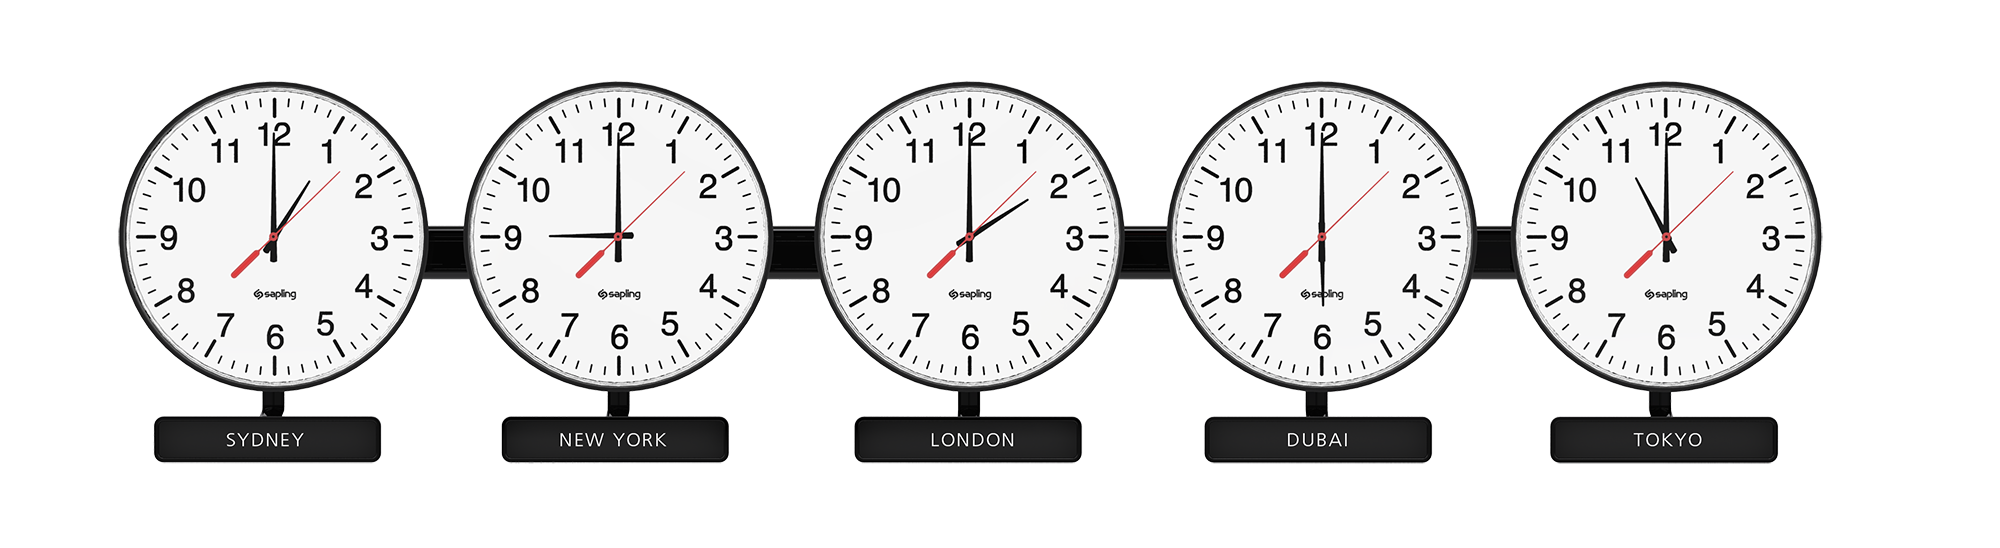 Покажи на картинке часы. Мировые часы настенные. Часы настенные Разное время. Часы настенные мировое время. Циферблаты с разным временем.